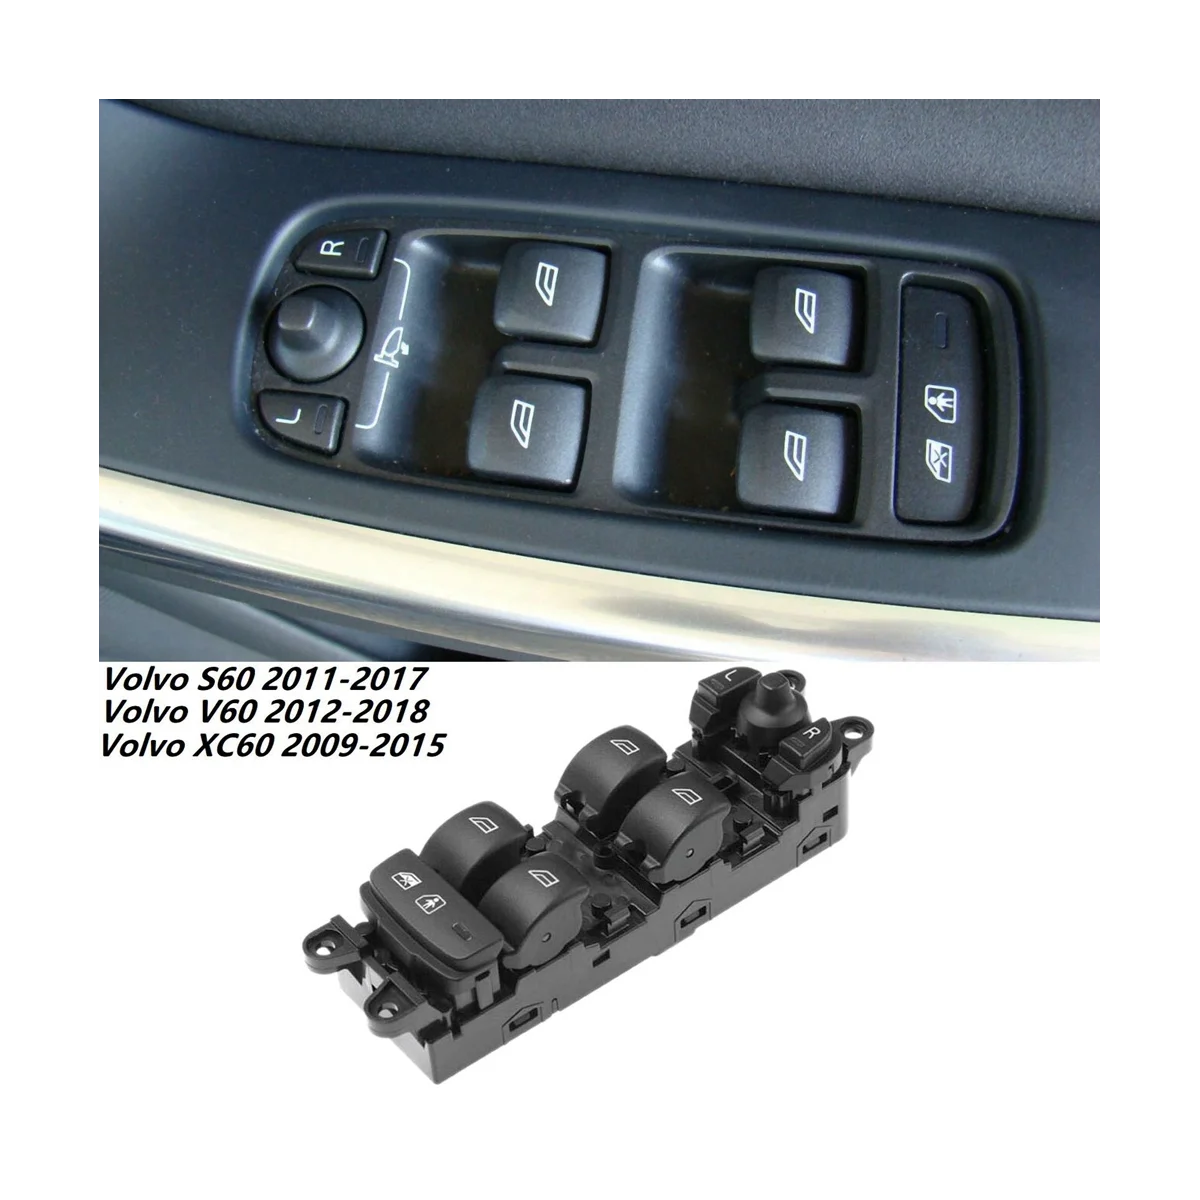 Für Volvo V60 S60 XC60 2009-2015 Vorder Elektrische Master Fensterheber  Control Schalter Befehl Taste 31334348 Auto Produkte - AliExpress